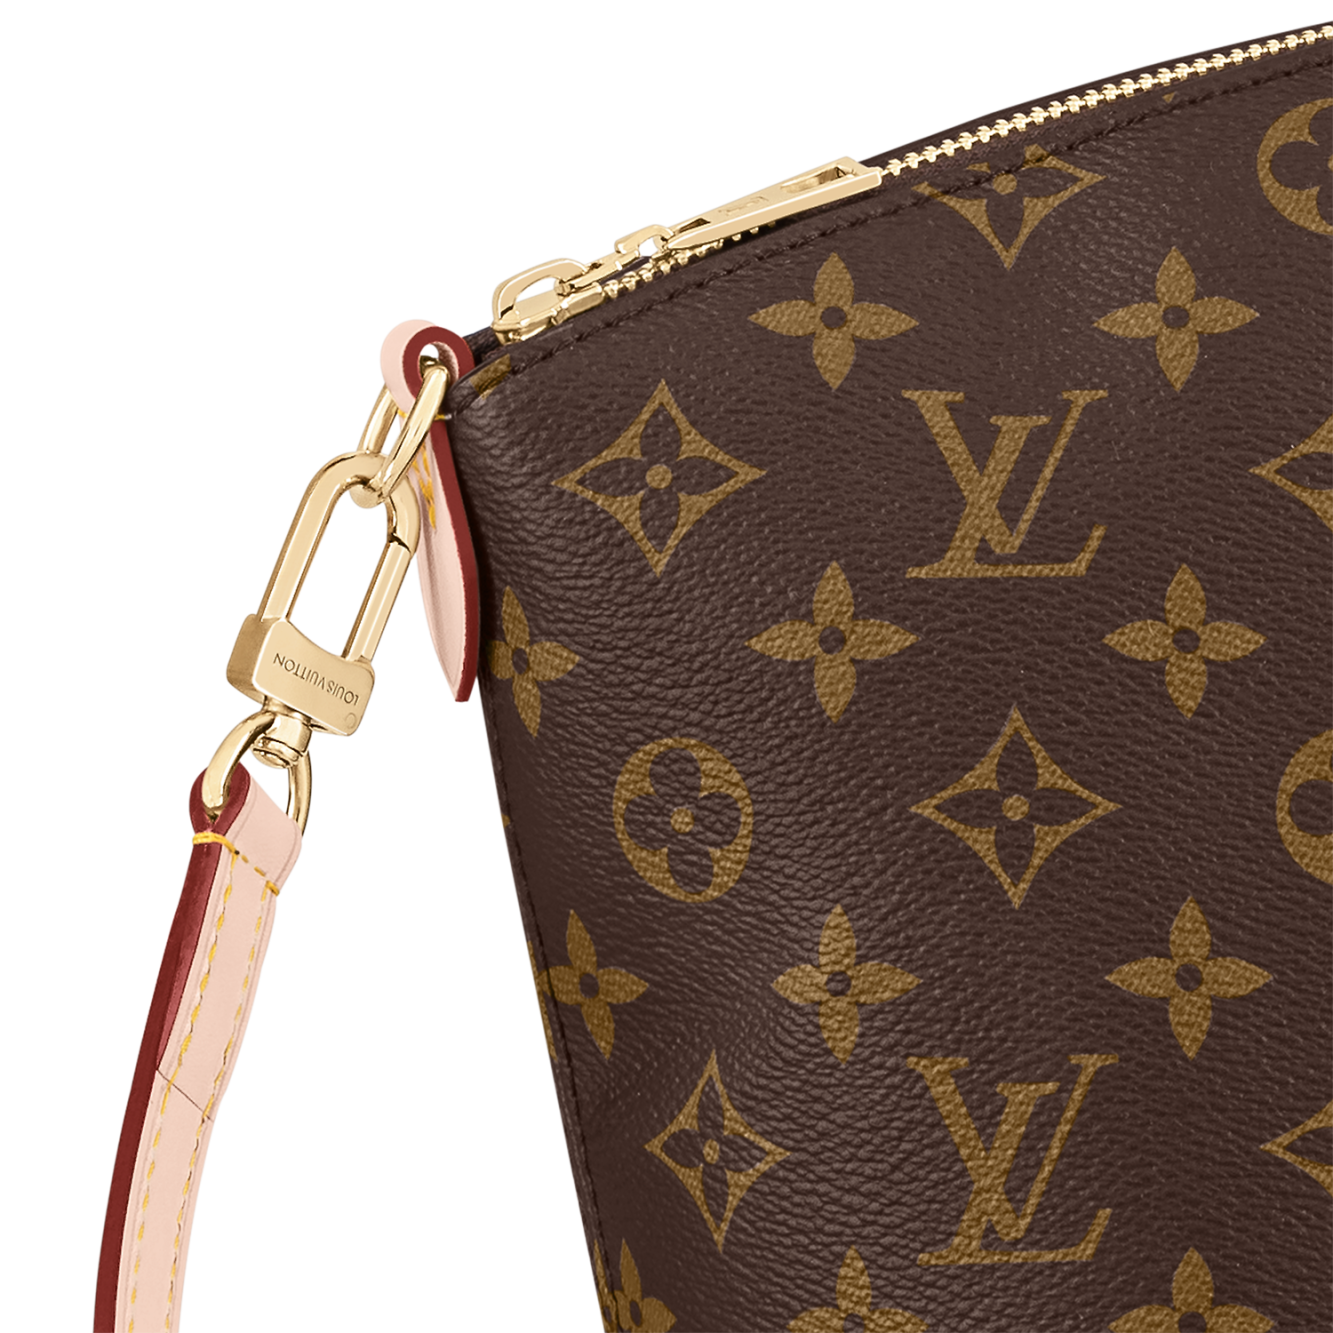 Louis Vuitton Boétie MM Tote Bag - Vitkac shop online